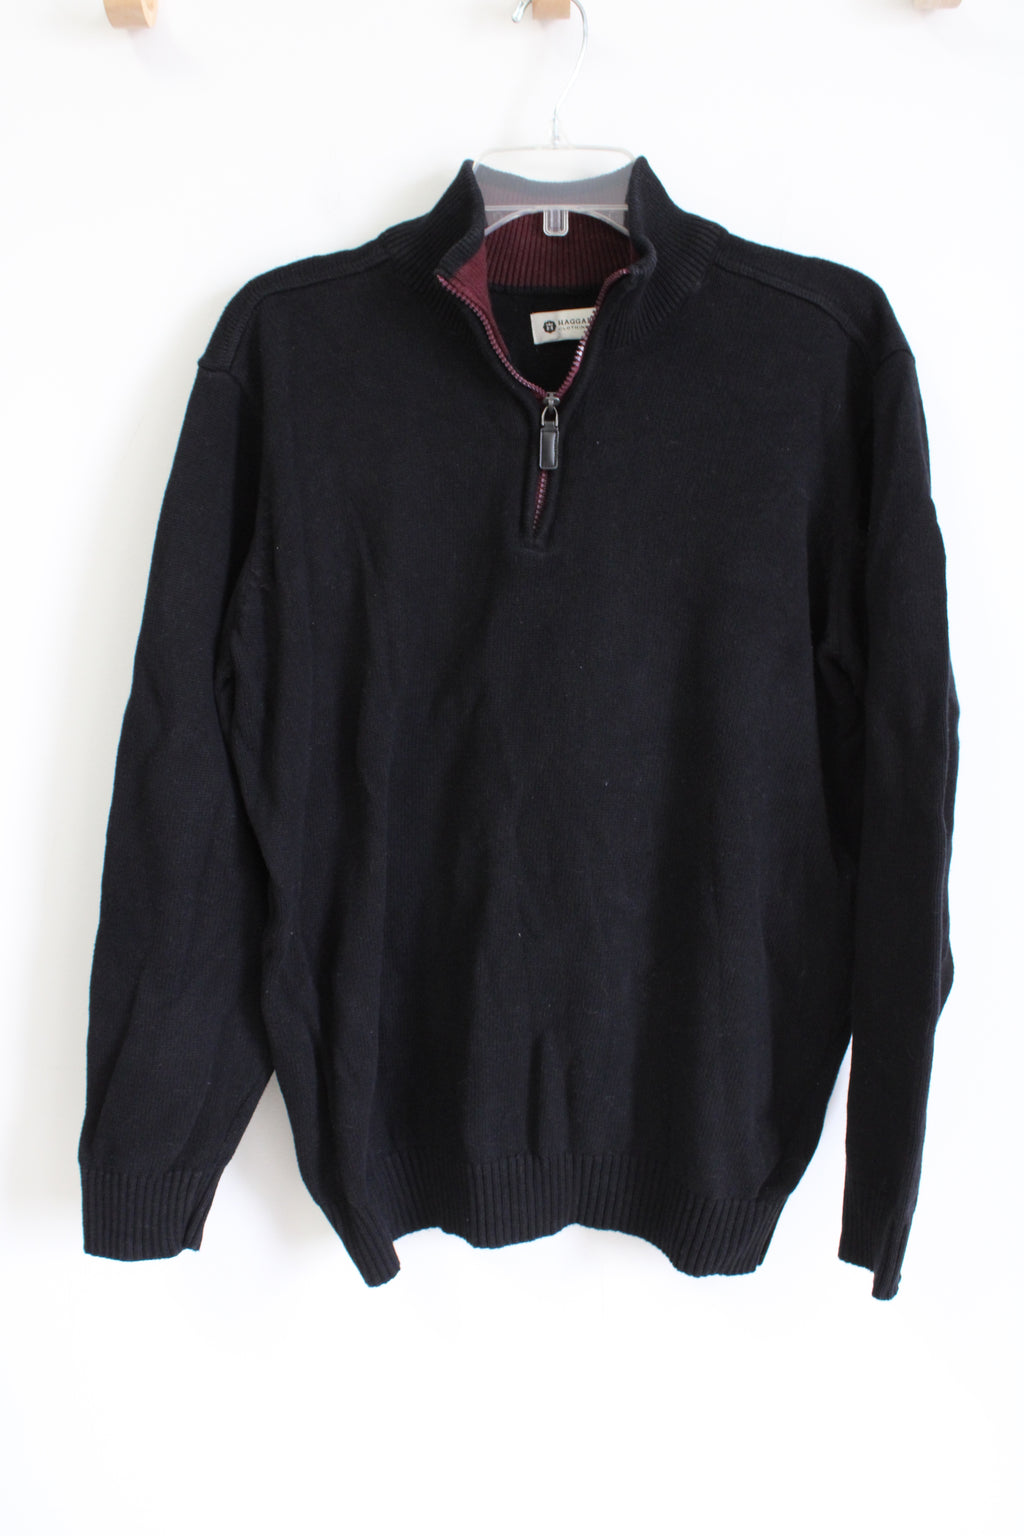 Haggar Black Knit 1/4 Zip Sweater | XL